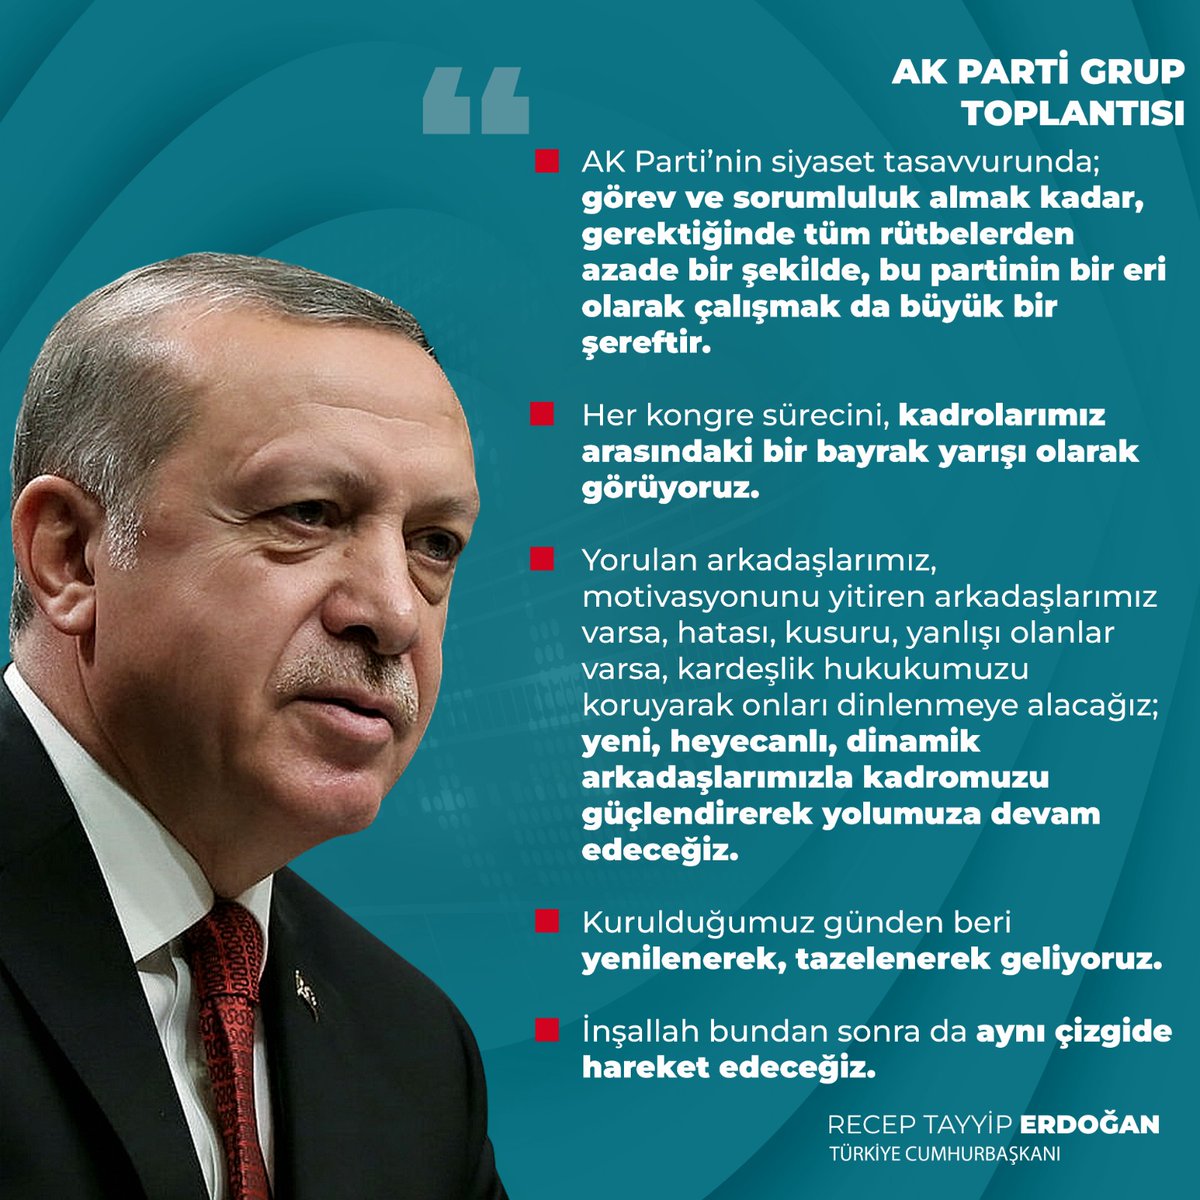 Cumhurbaşkanımız Recep Tayyip Erdoğan: 'Yorulan, motivasyonunu yitiren arkadaşlarımızı kardeşlik hukukumuzu koruyarak dinlenmeye alacağız; yeni, heyecanlı arkadaşlarımızla kadromuzu güçlendireceğiz.' @RTErdogan